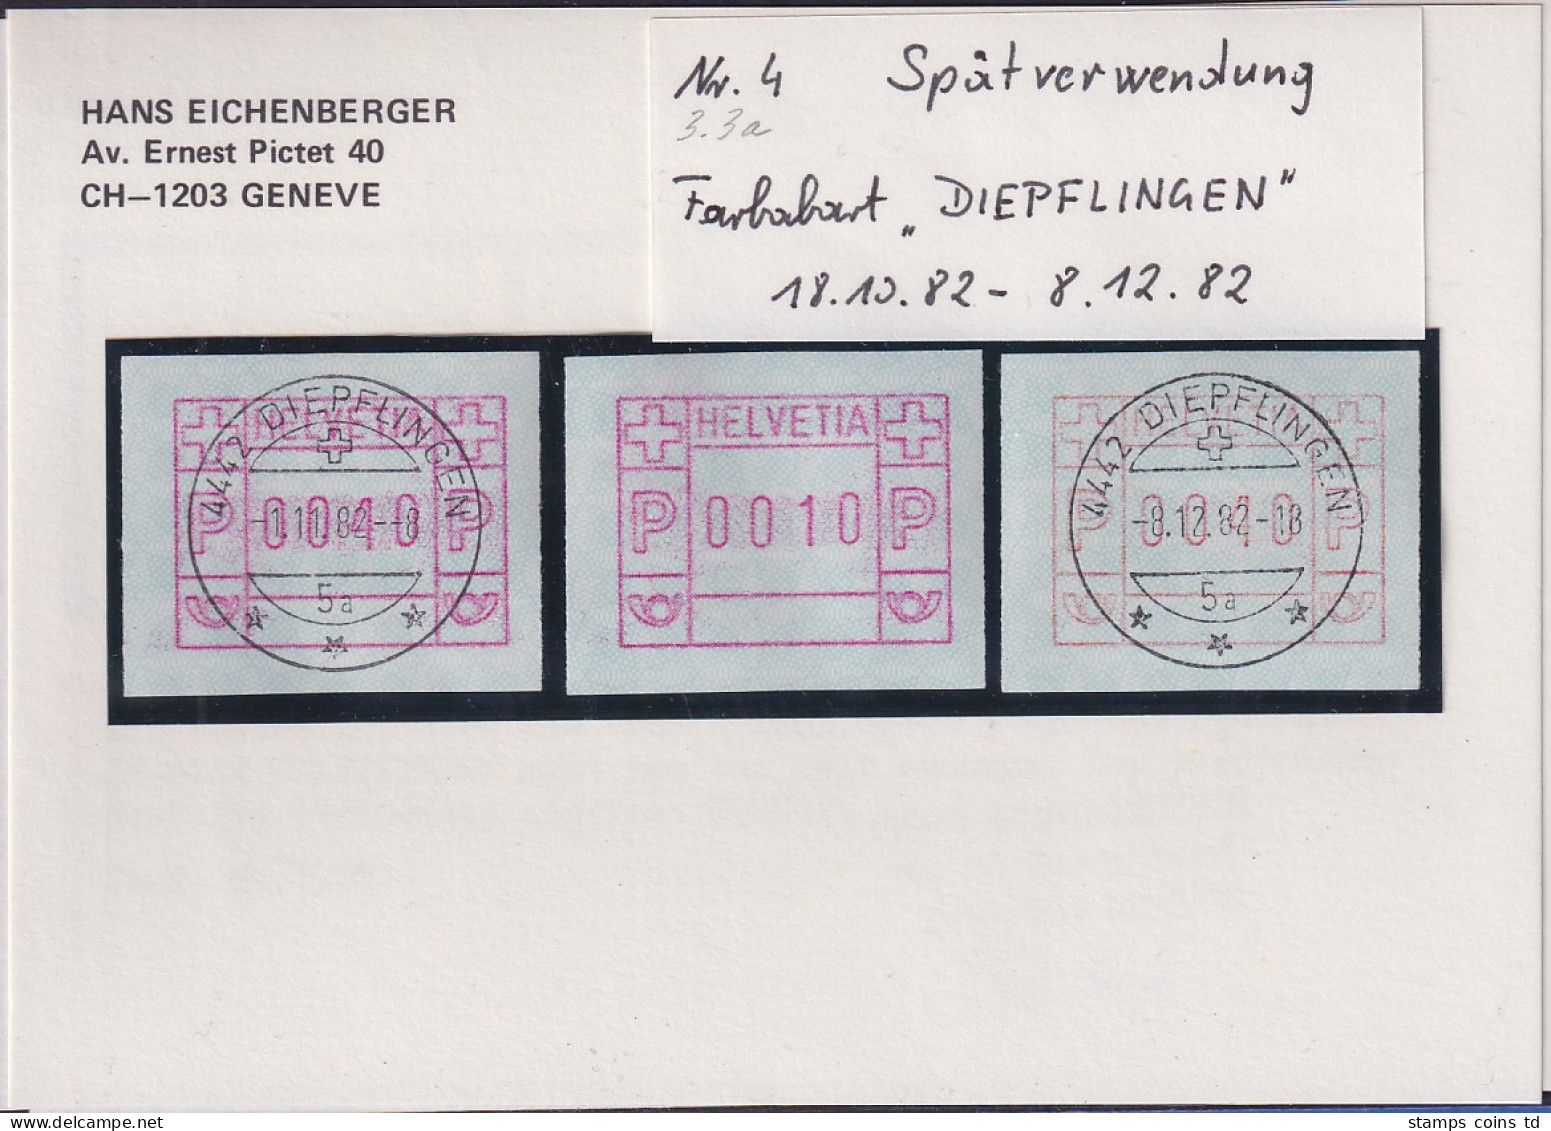 Schweiz FRAMA-ATM Mi-Nr. 3.3a Spätverwendung DIEPFLINGEN 18.10. Bis 8.12. 82  - Timbres D'automates